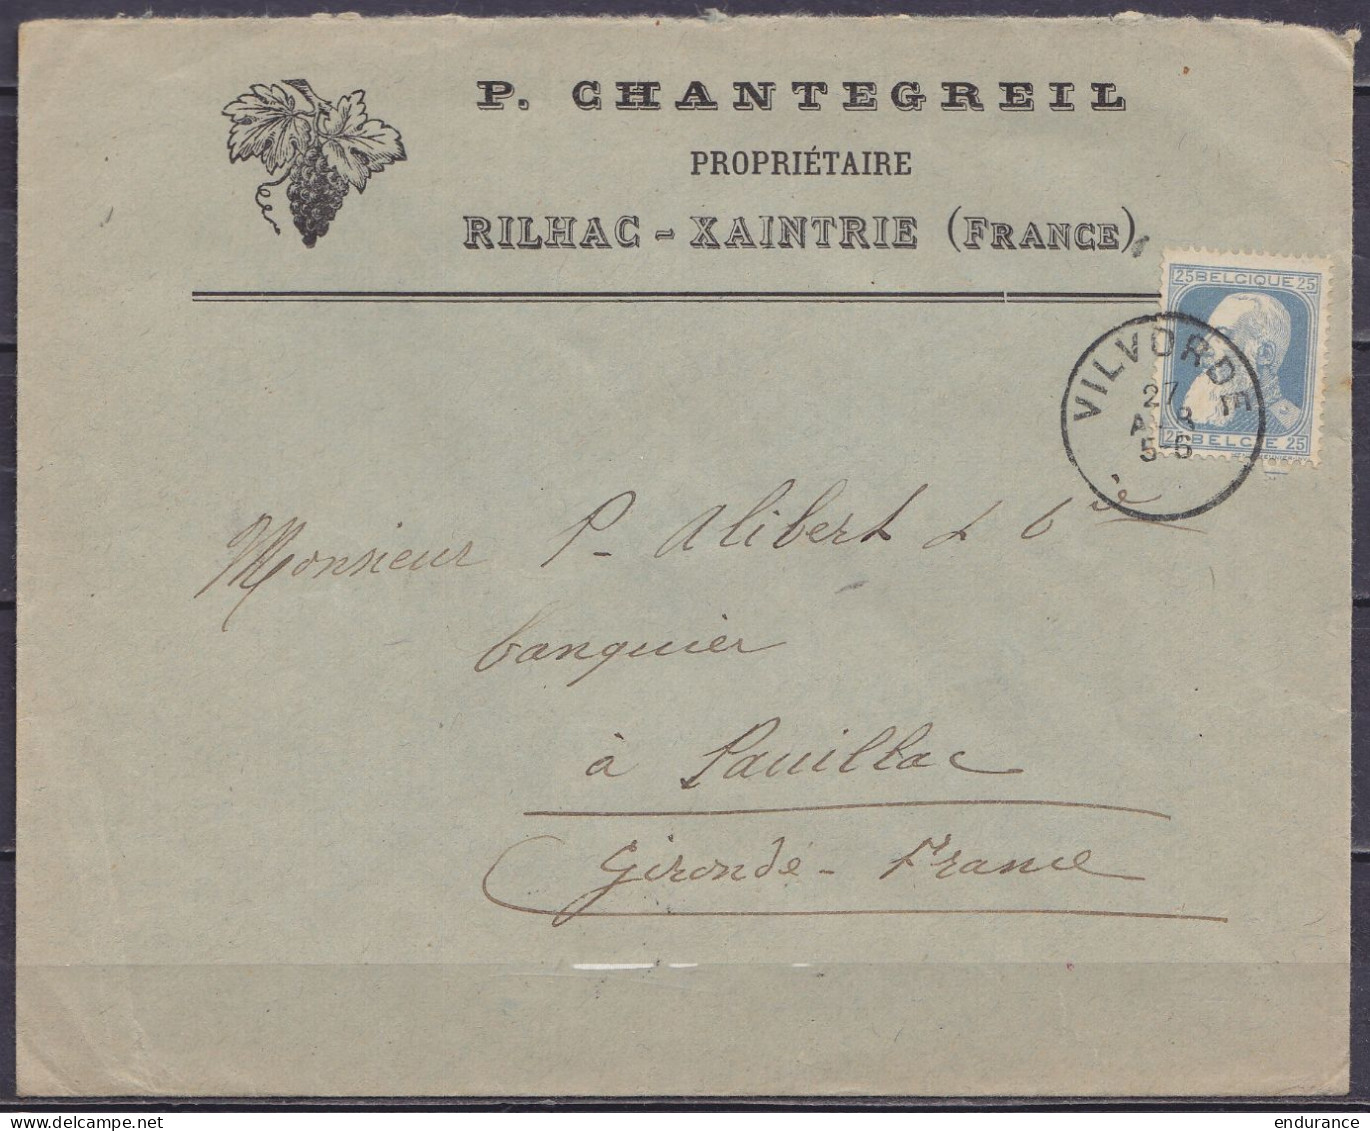 L. Entête Viticulteur "Chantegreil Rilhac-Xaintrie" Affr. N°76 Càd VILVOORDE /27 AVR 1908 Pour PAUILLAC Gironde (thème V - 1905 Grove Baard